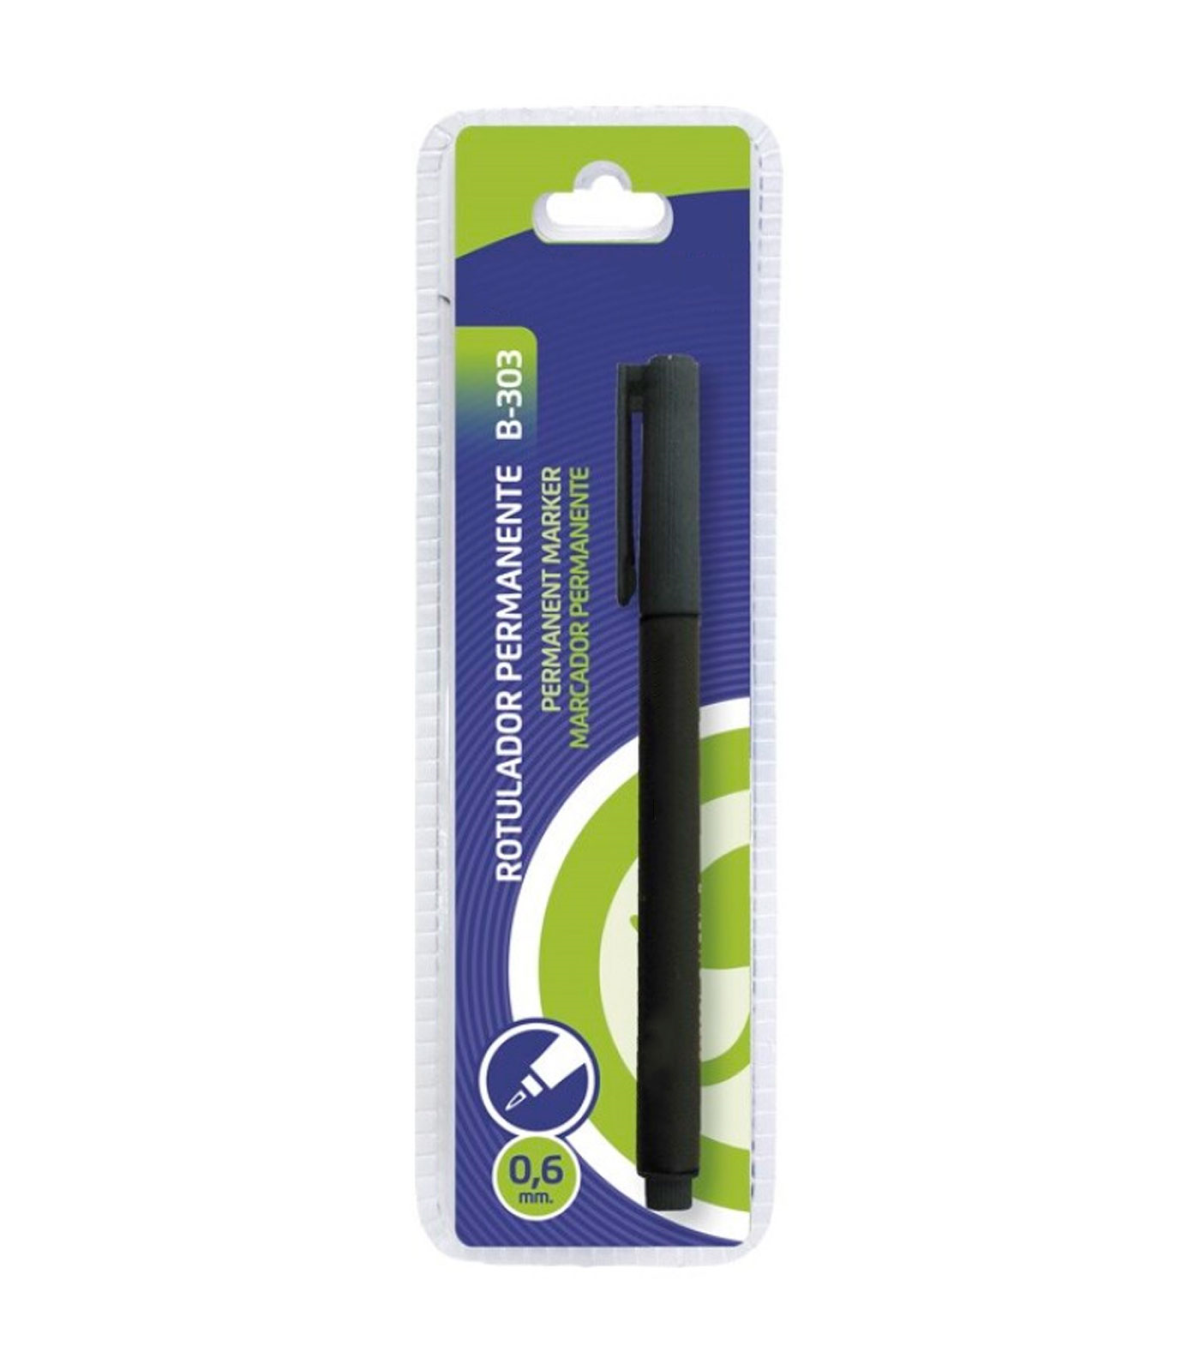 ClearLine® Rotulador permanente doble punta 0,6 y 1,5 mm, Verde